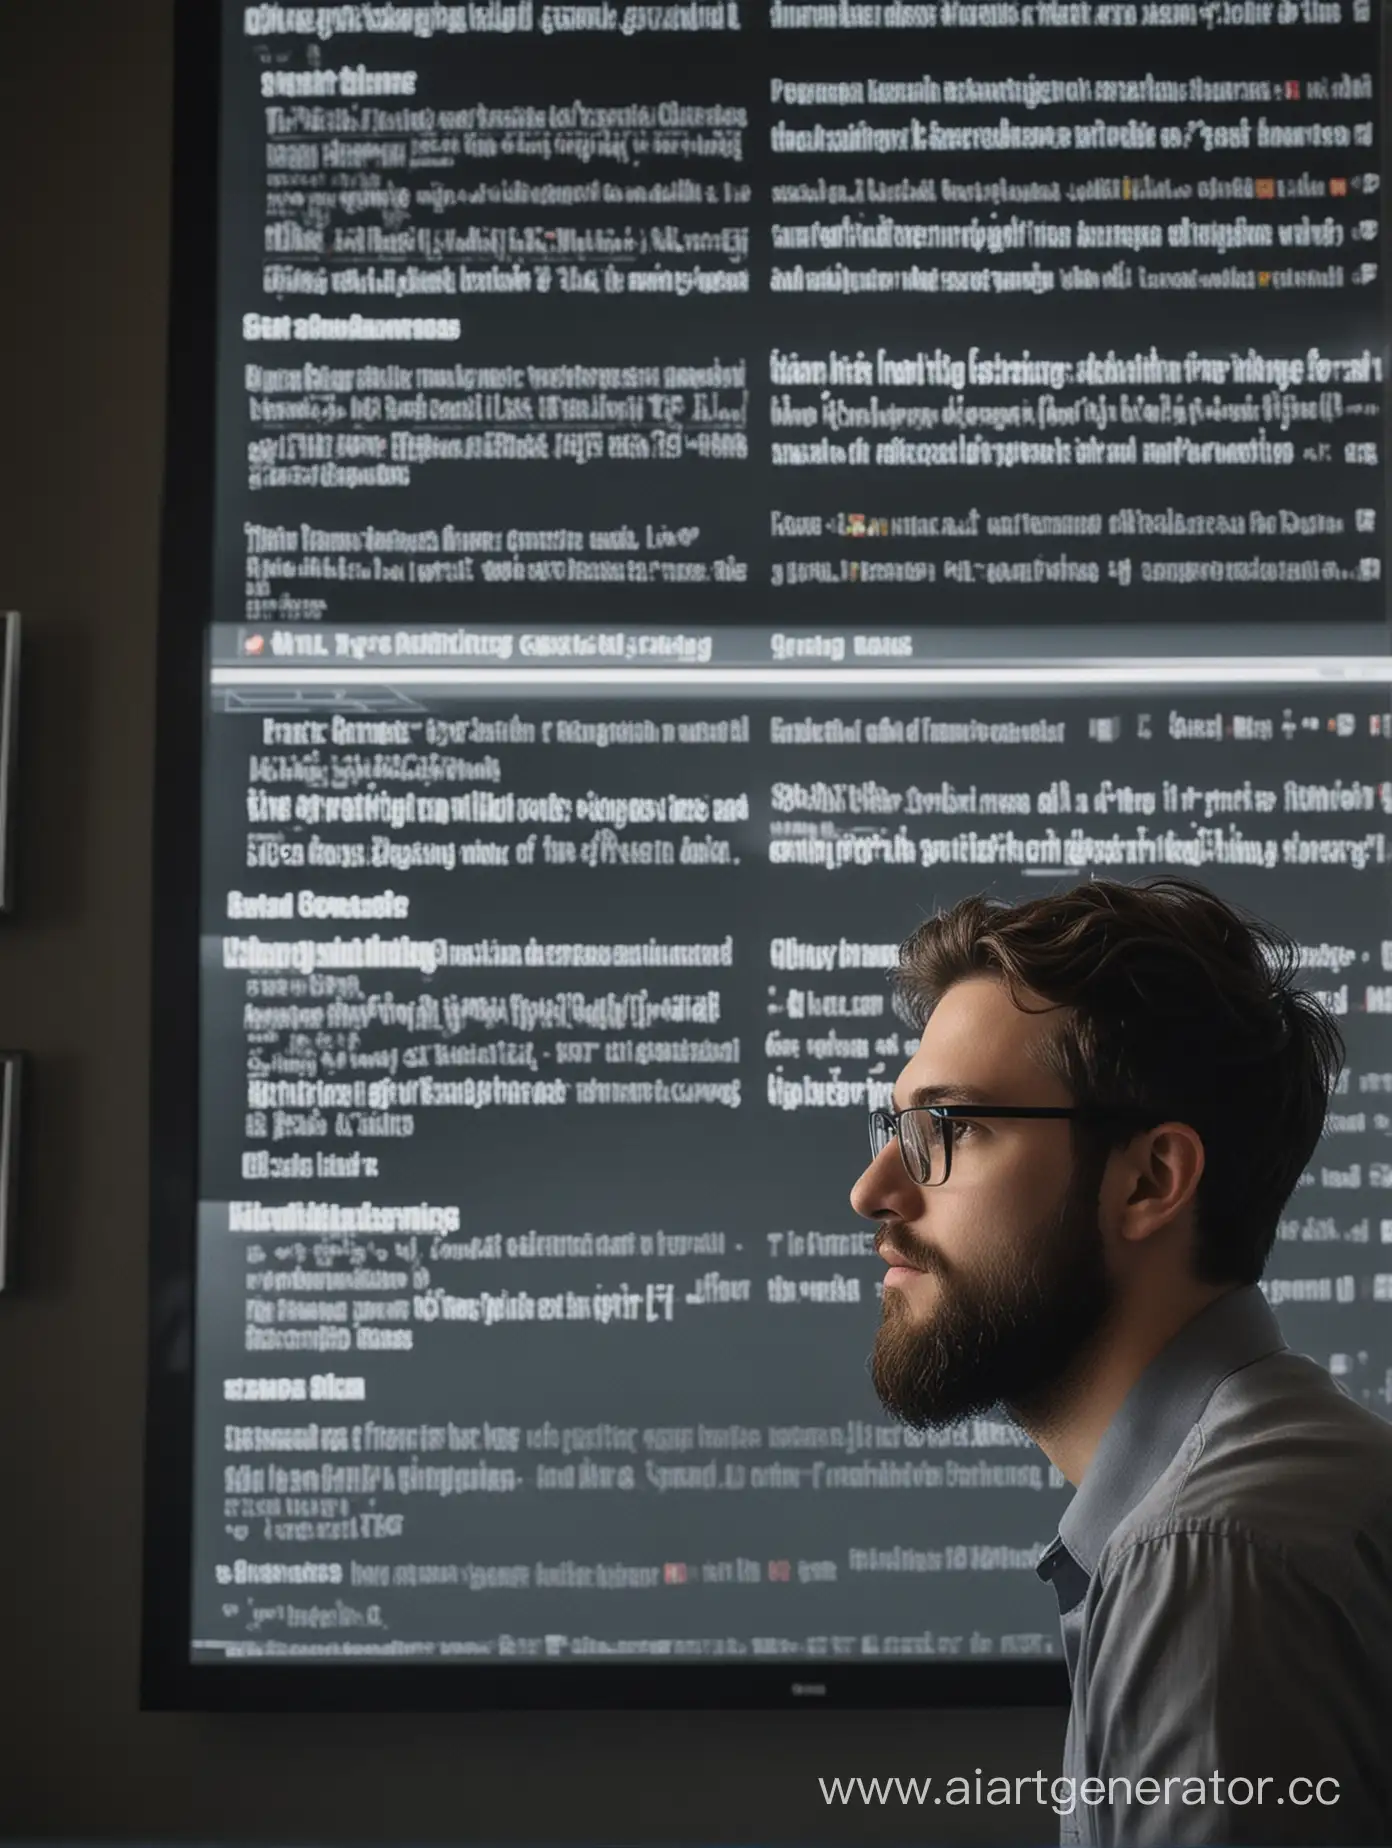 Молодой человек с бородой и в очках задумчиво смотрит в экраны с котировками, графиками. На стене телевизор с Bloomberg или CNBC.
